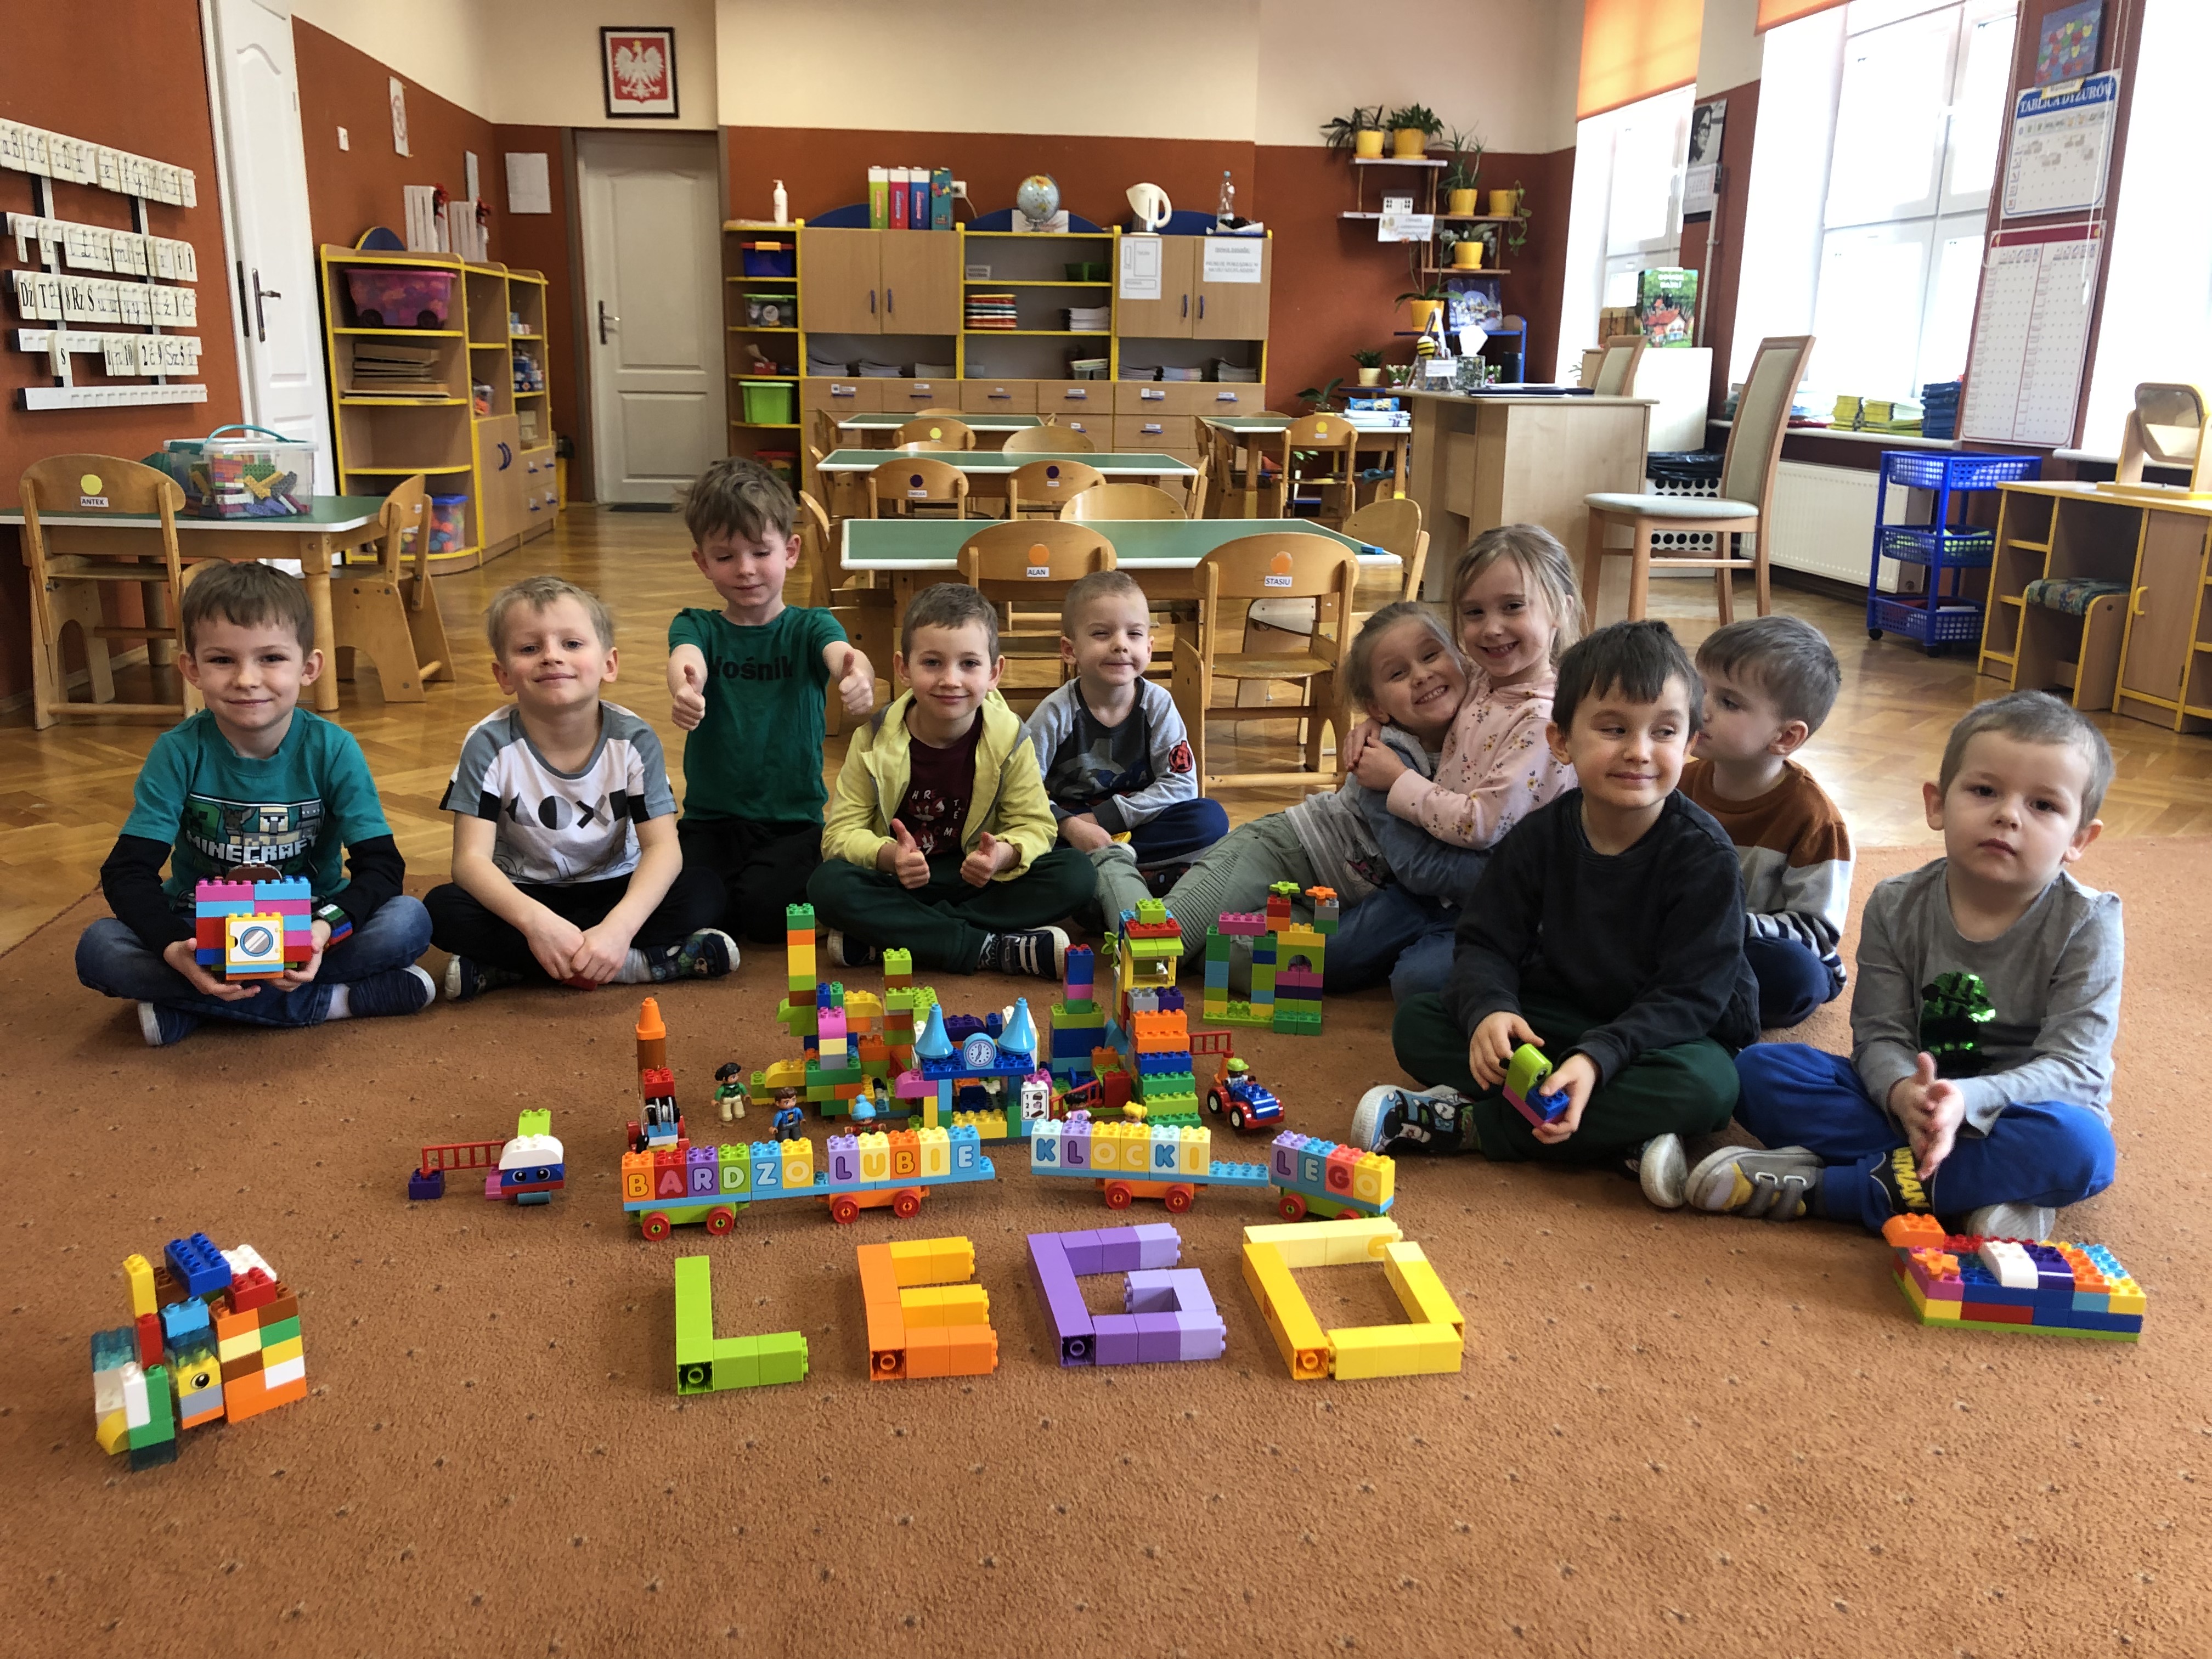 Dziesięcioro dzieci na dywanie. Różne przedmioty zbudowane z klocków Lego.